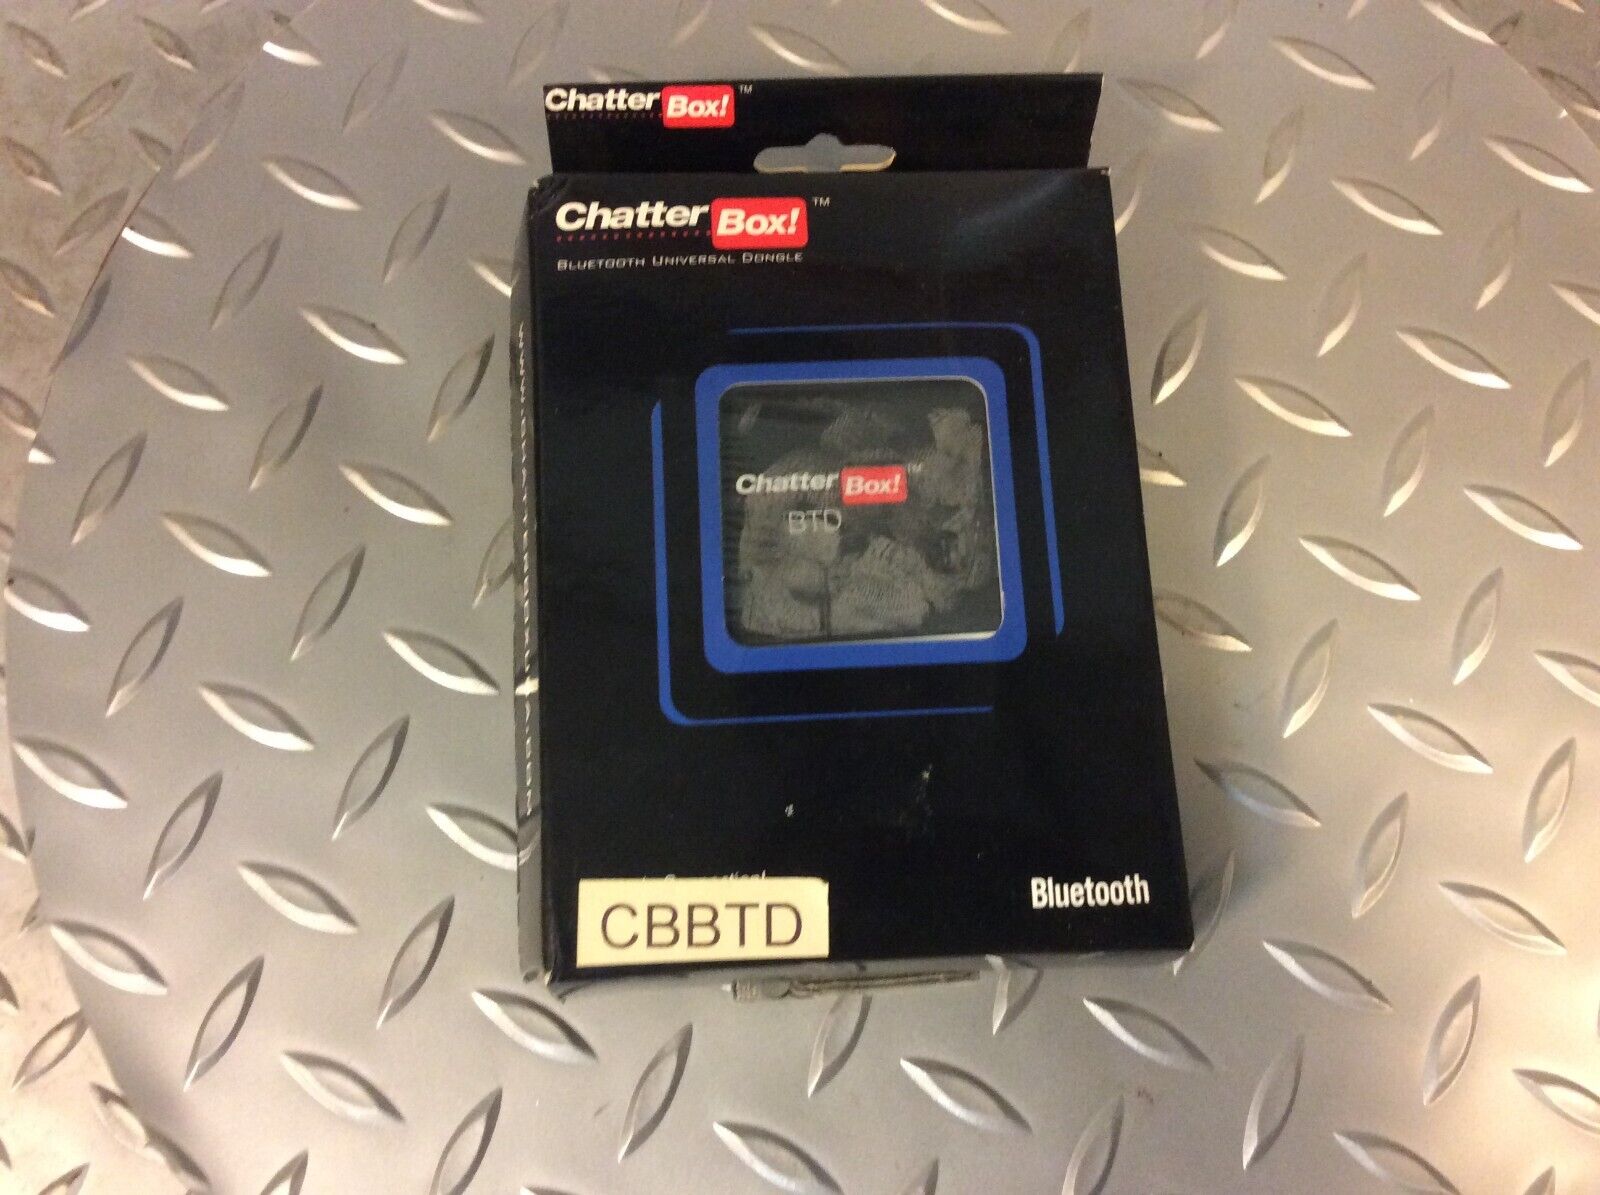 Chatterbox Bluetooth Universal Dongle Cbbtd